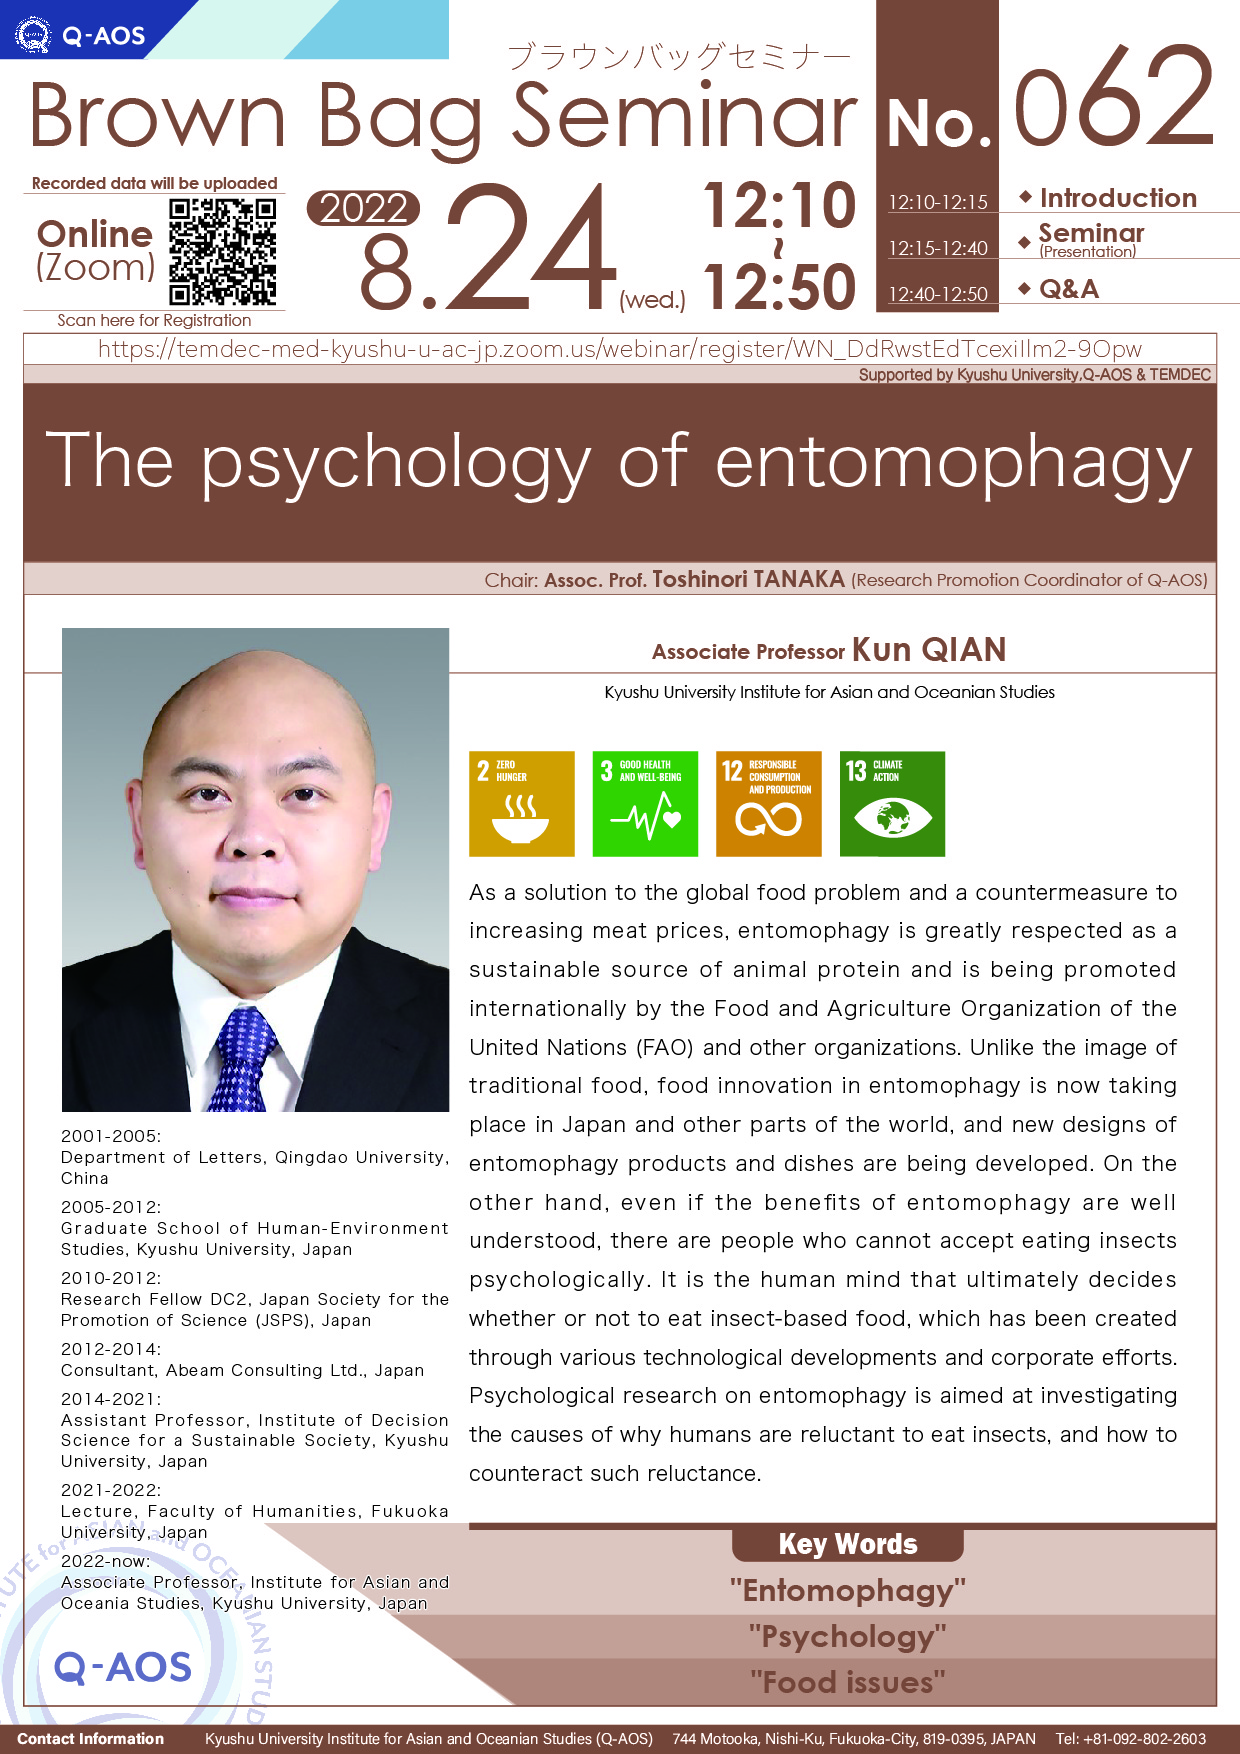 アイキャッチ画像：Kyushu University Institute for Asian and Oceanian Studies (Q-AOS) Brown Bag Seminar Series The 62th Seminar 「The psychology of entomophagy」